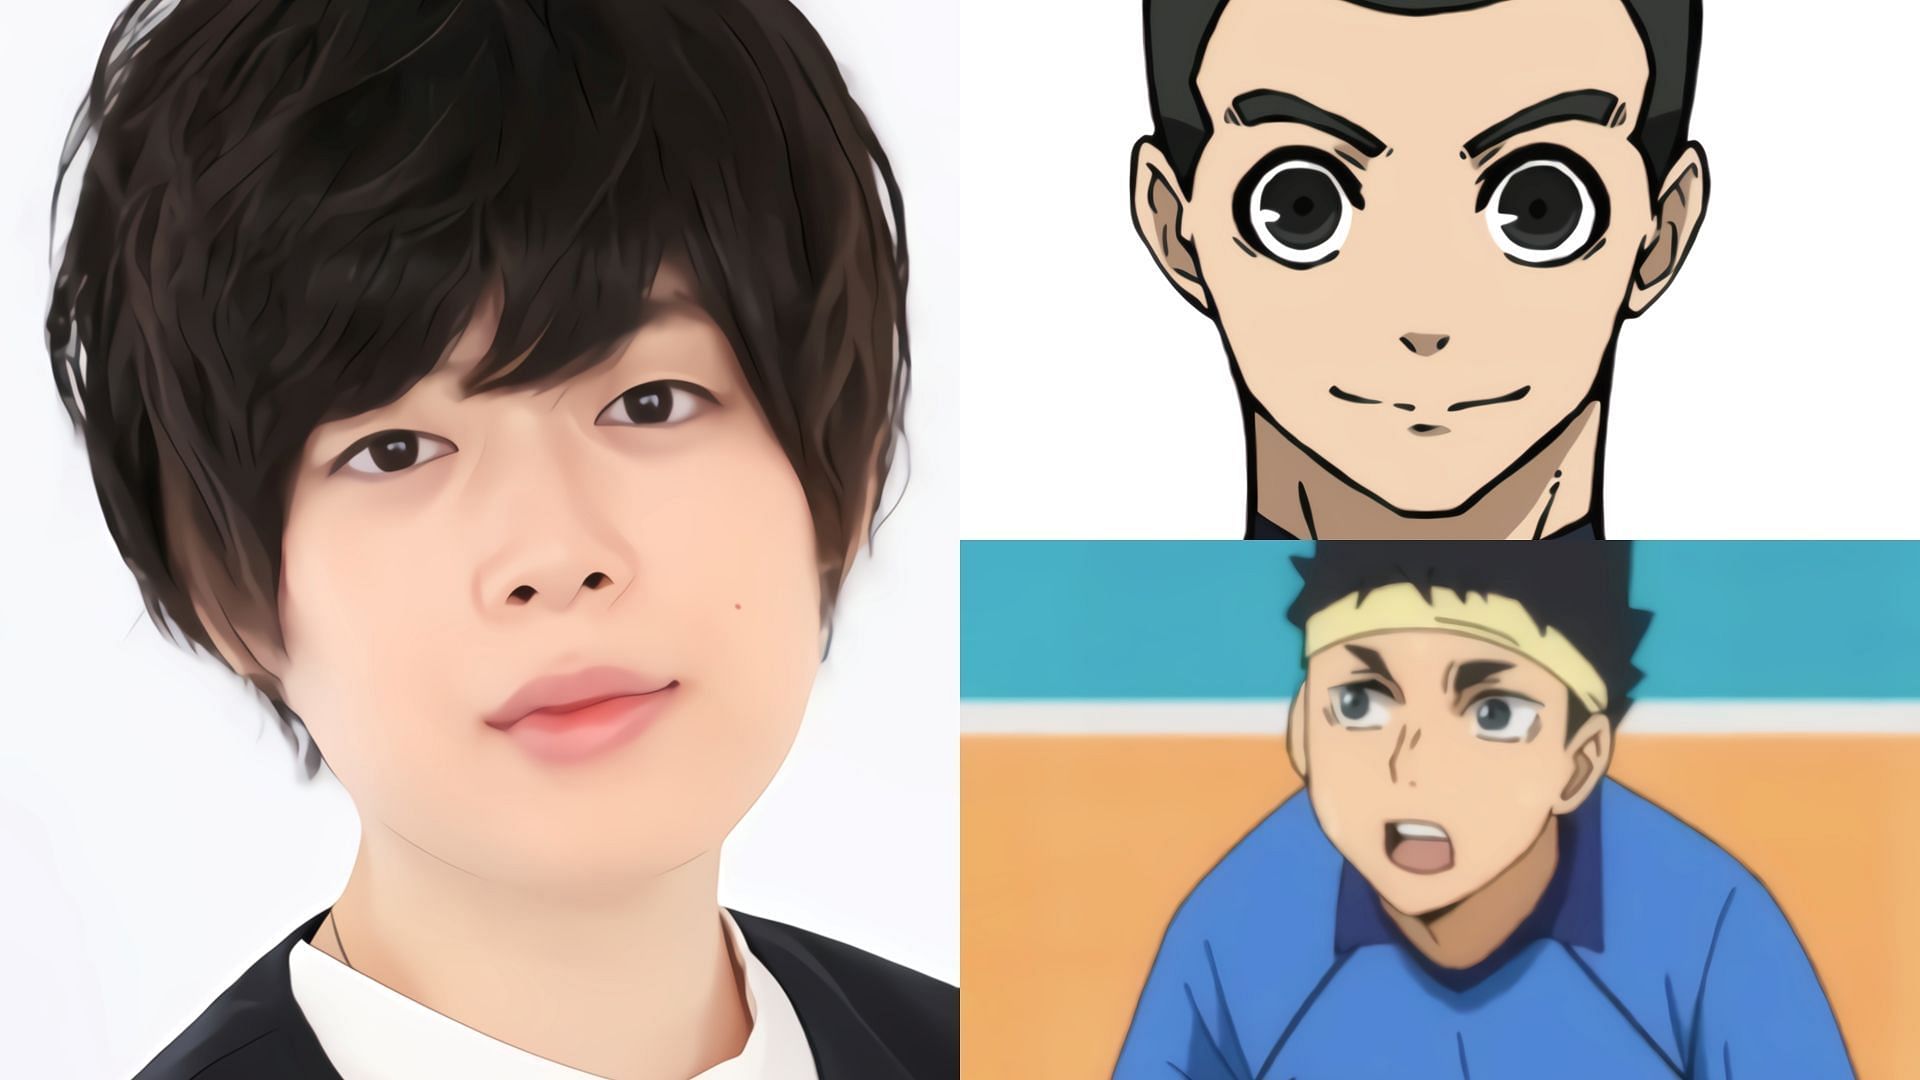 Aoi Ichikawa and his characters (Image via Sportskeeda)